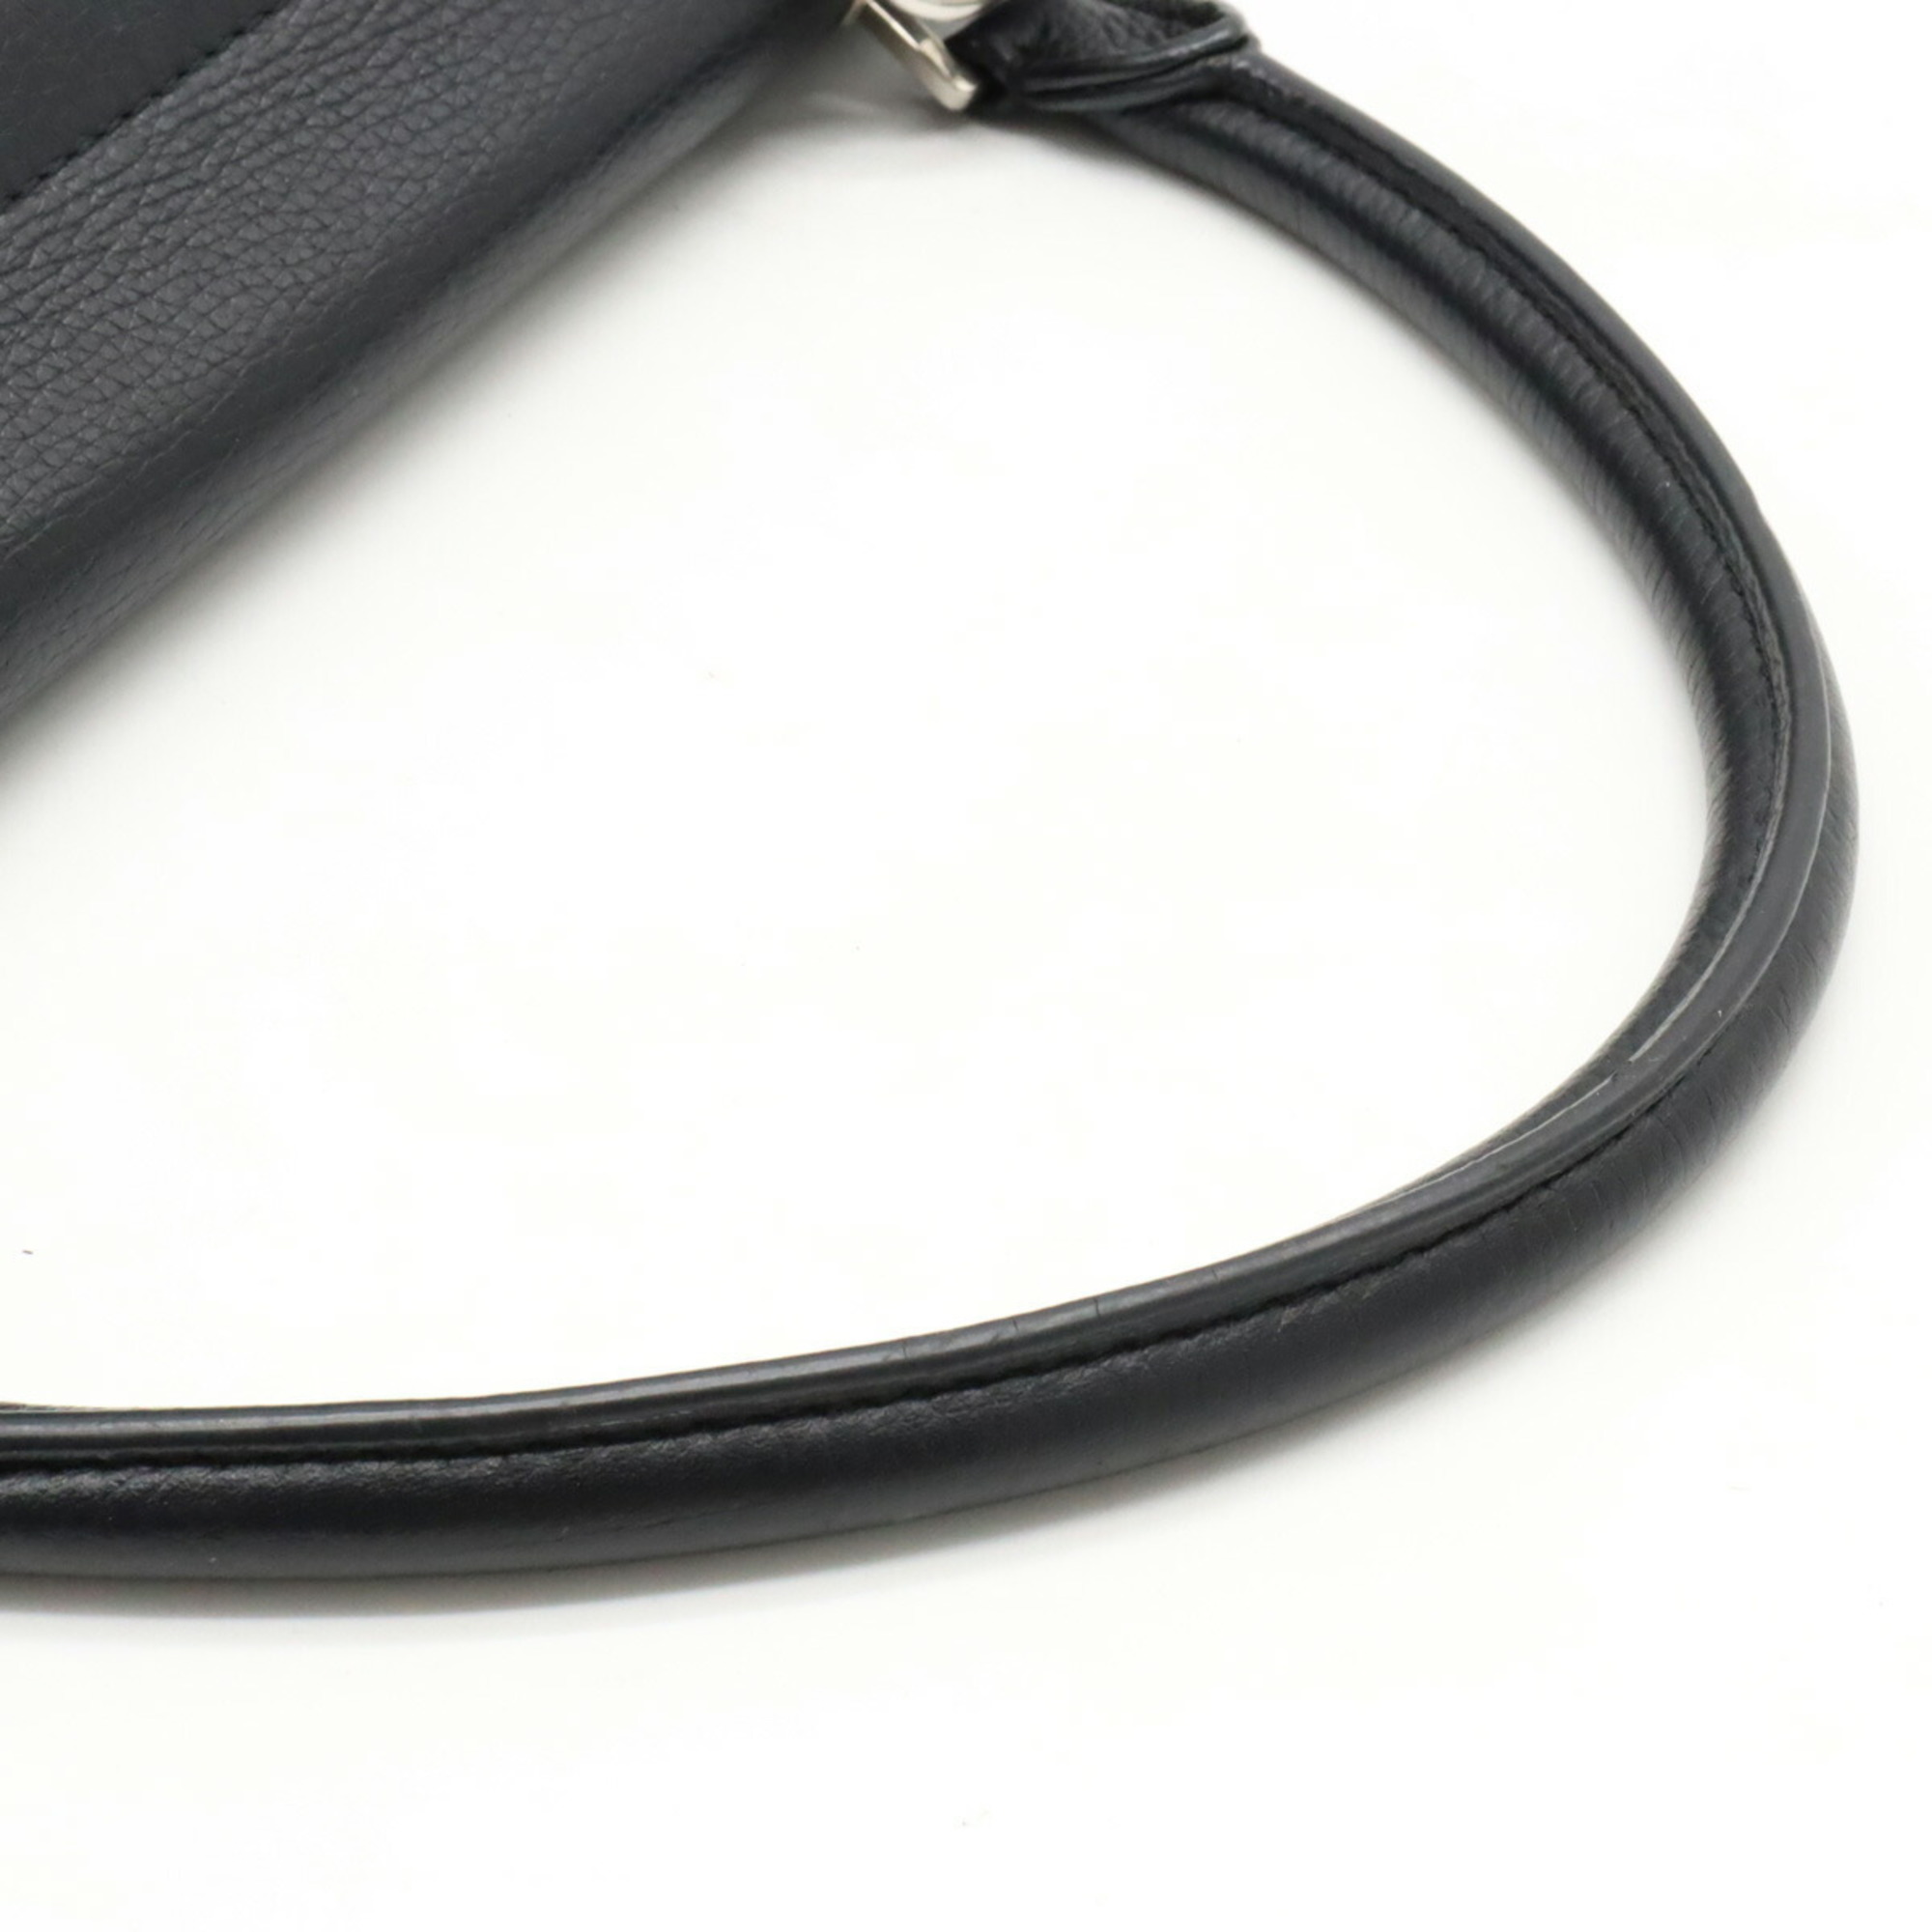 CELINE Trapeze Medium Handbag Shoulder Bag Leather Suede Black